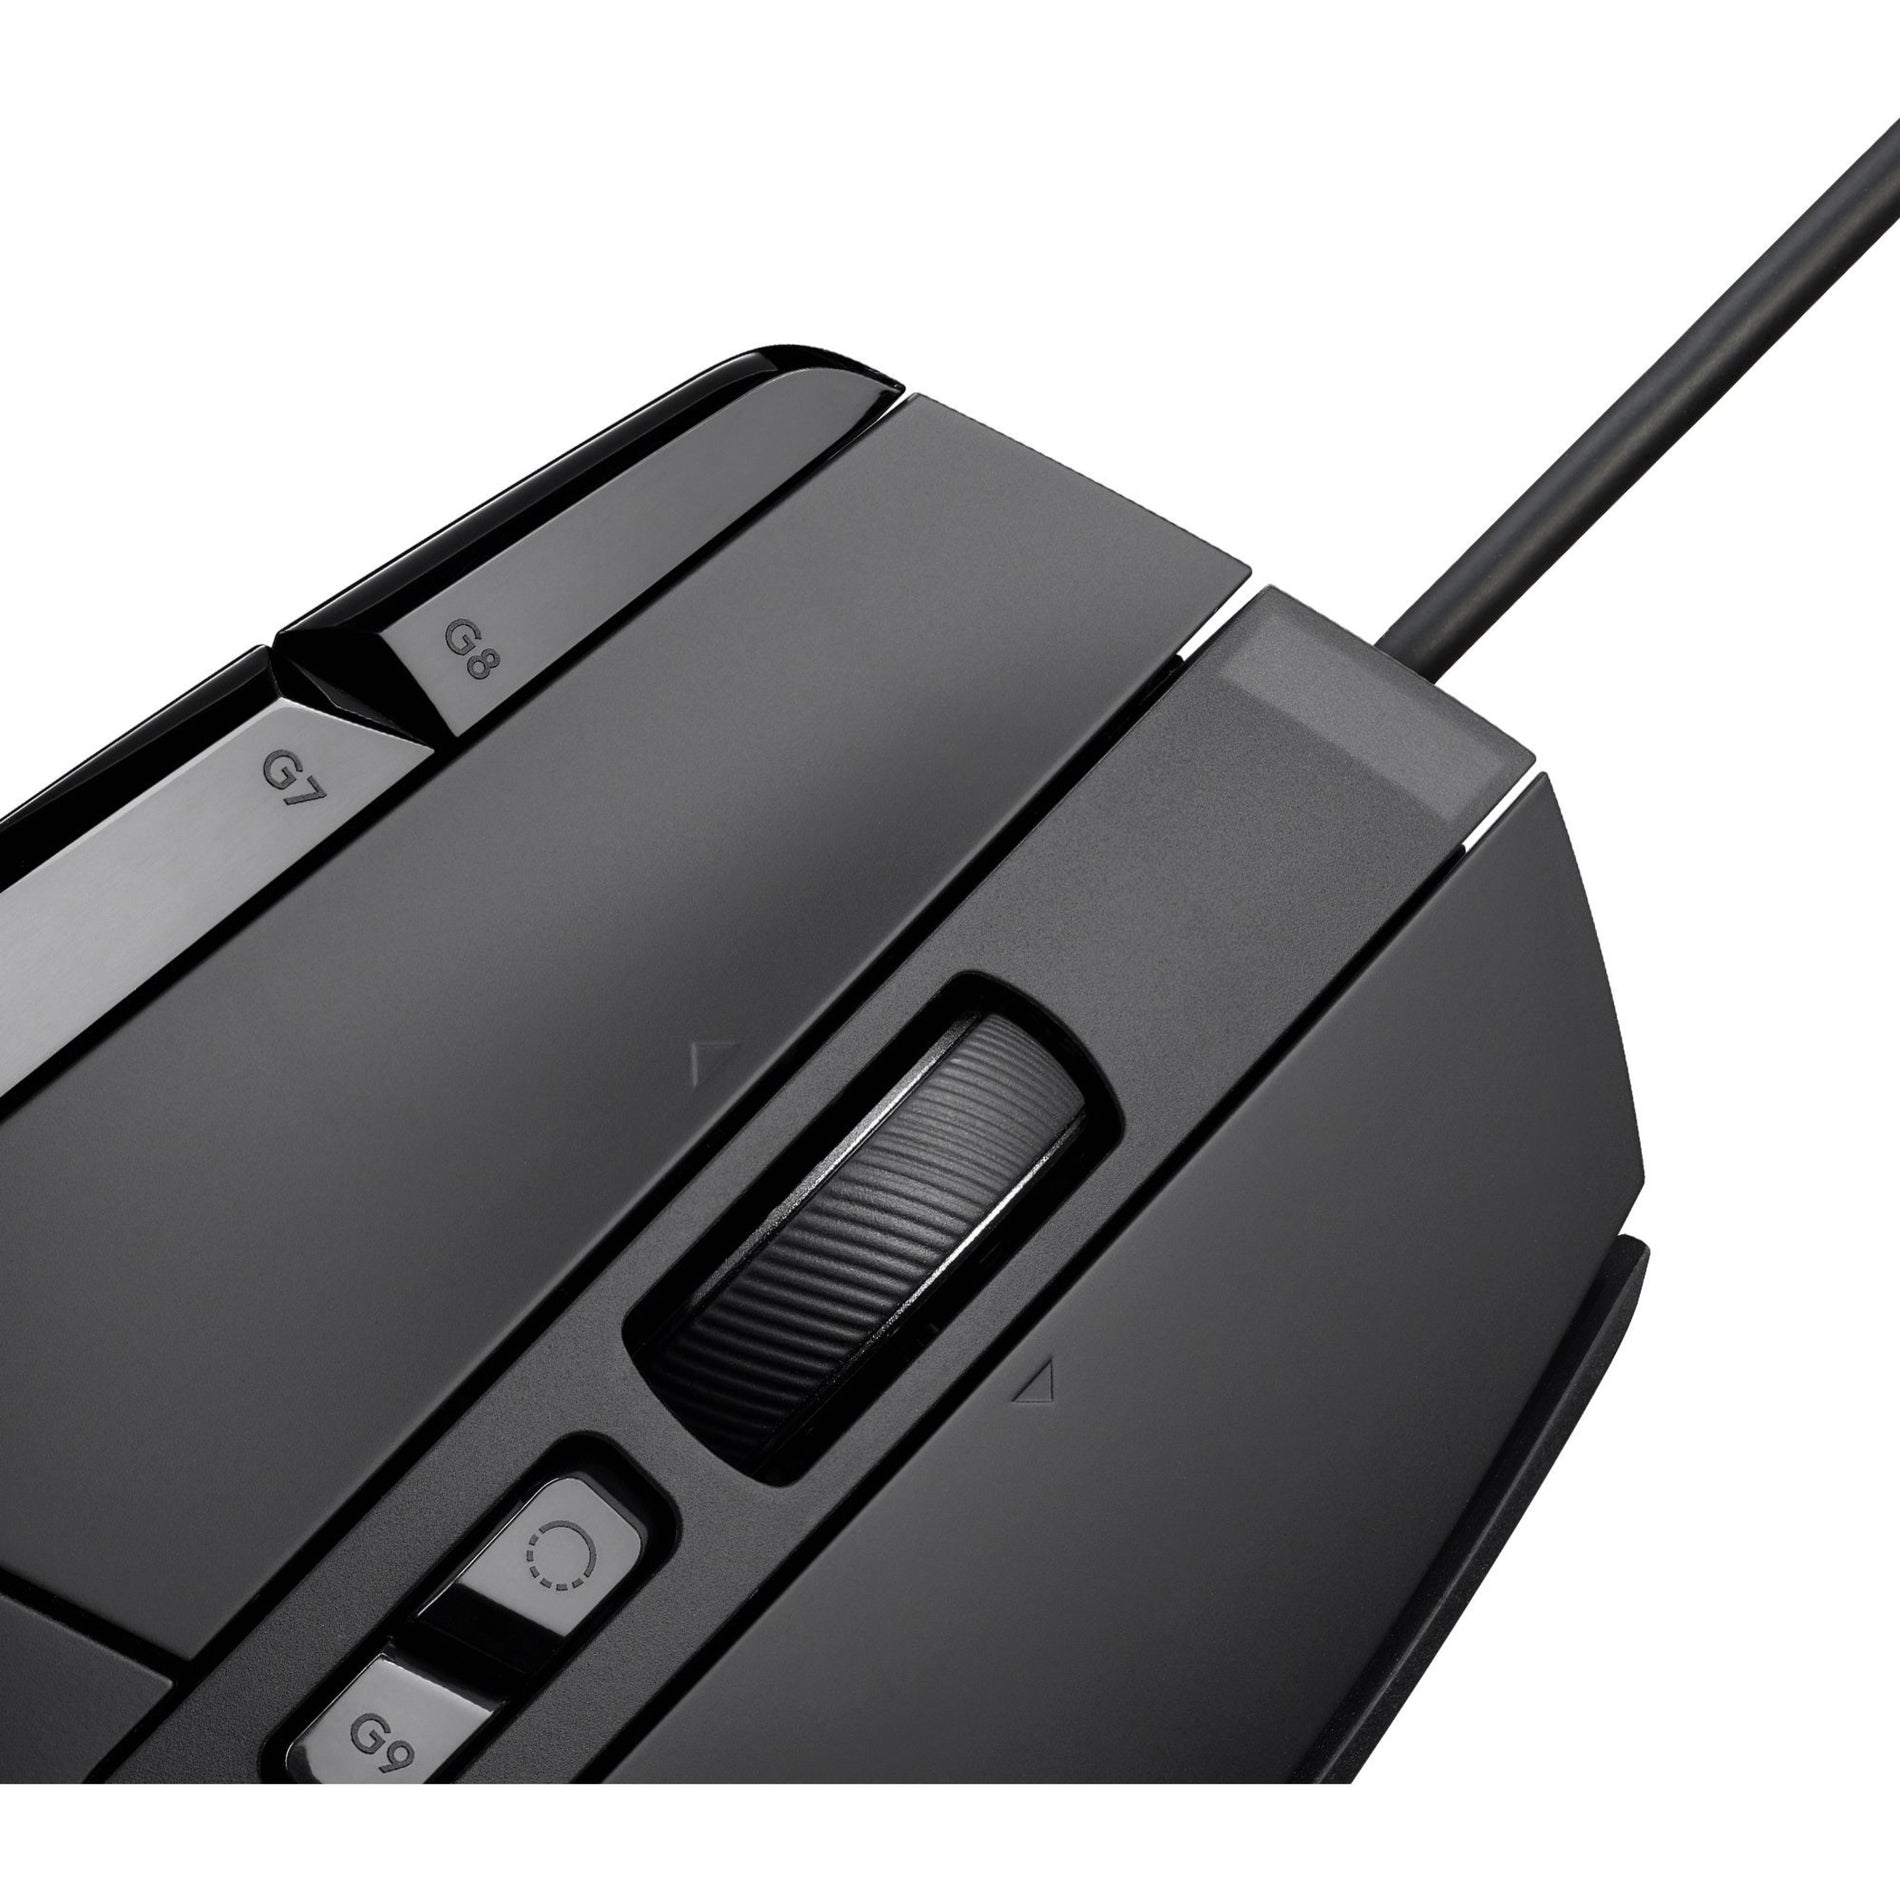 Logitech G 910-006136 G502 X Gaming Mouse Hohe Präzision Optischer Sensor 25600 DPI USB Verkabelt 2 Jahre Garantie